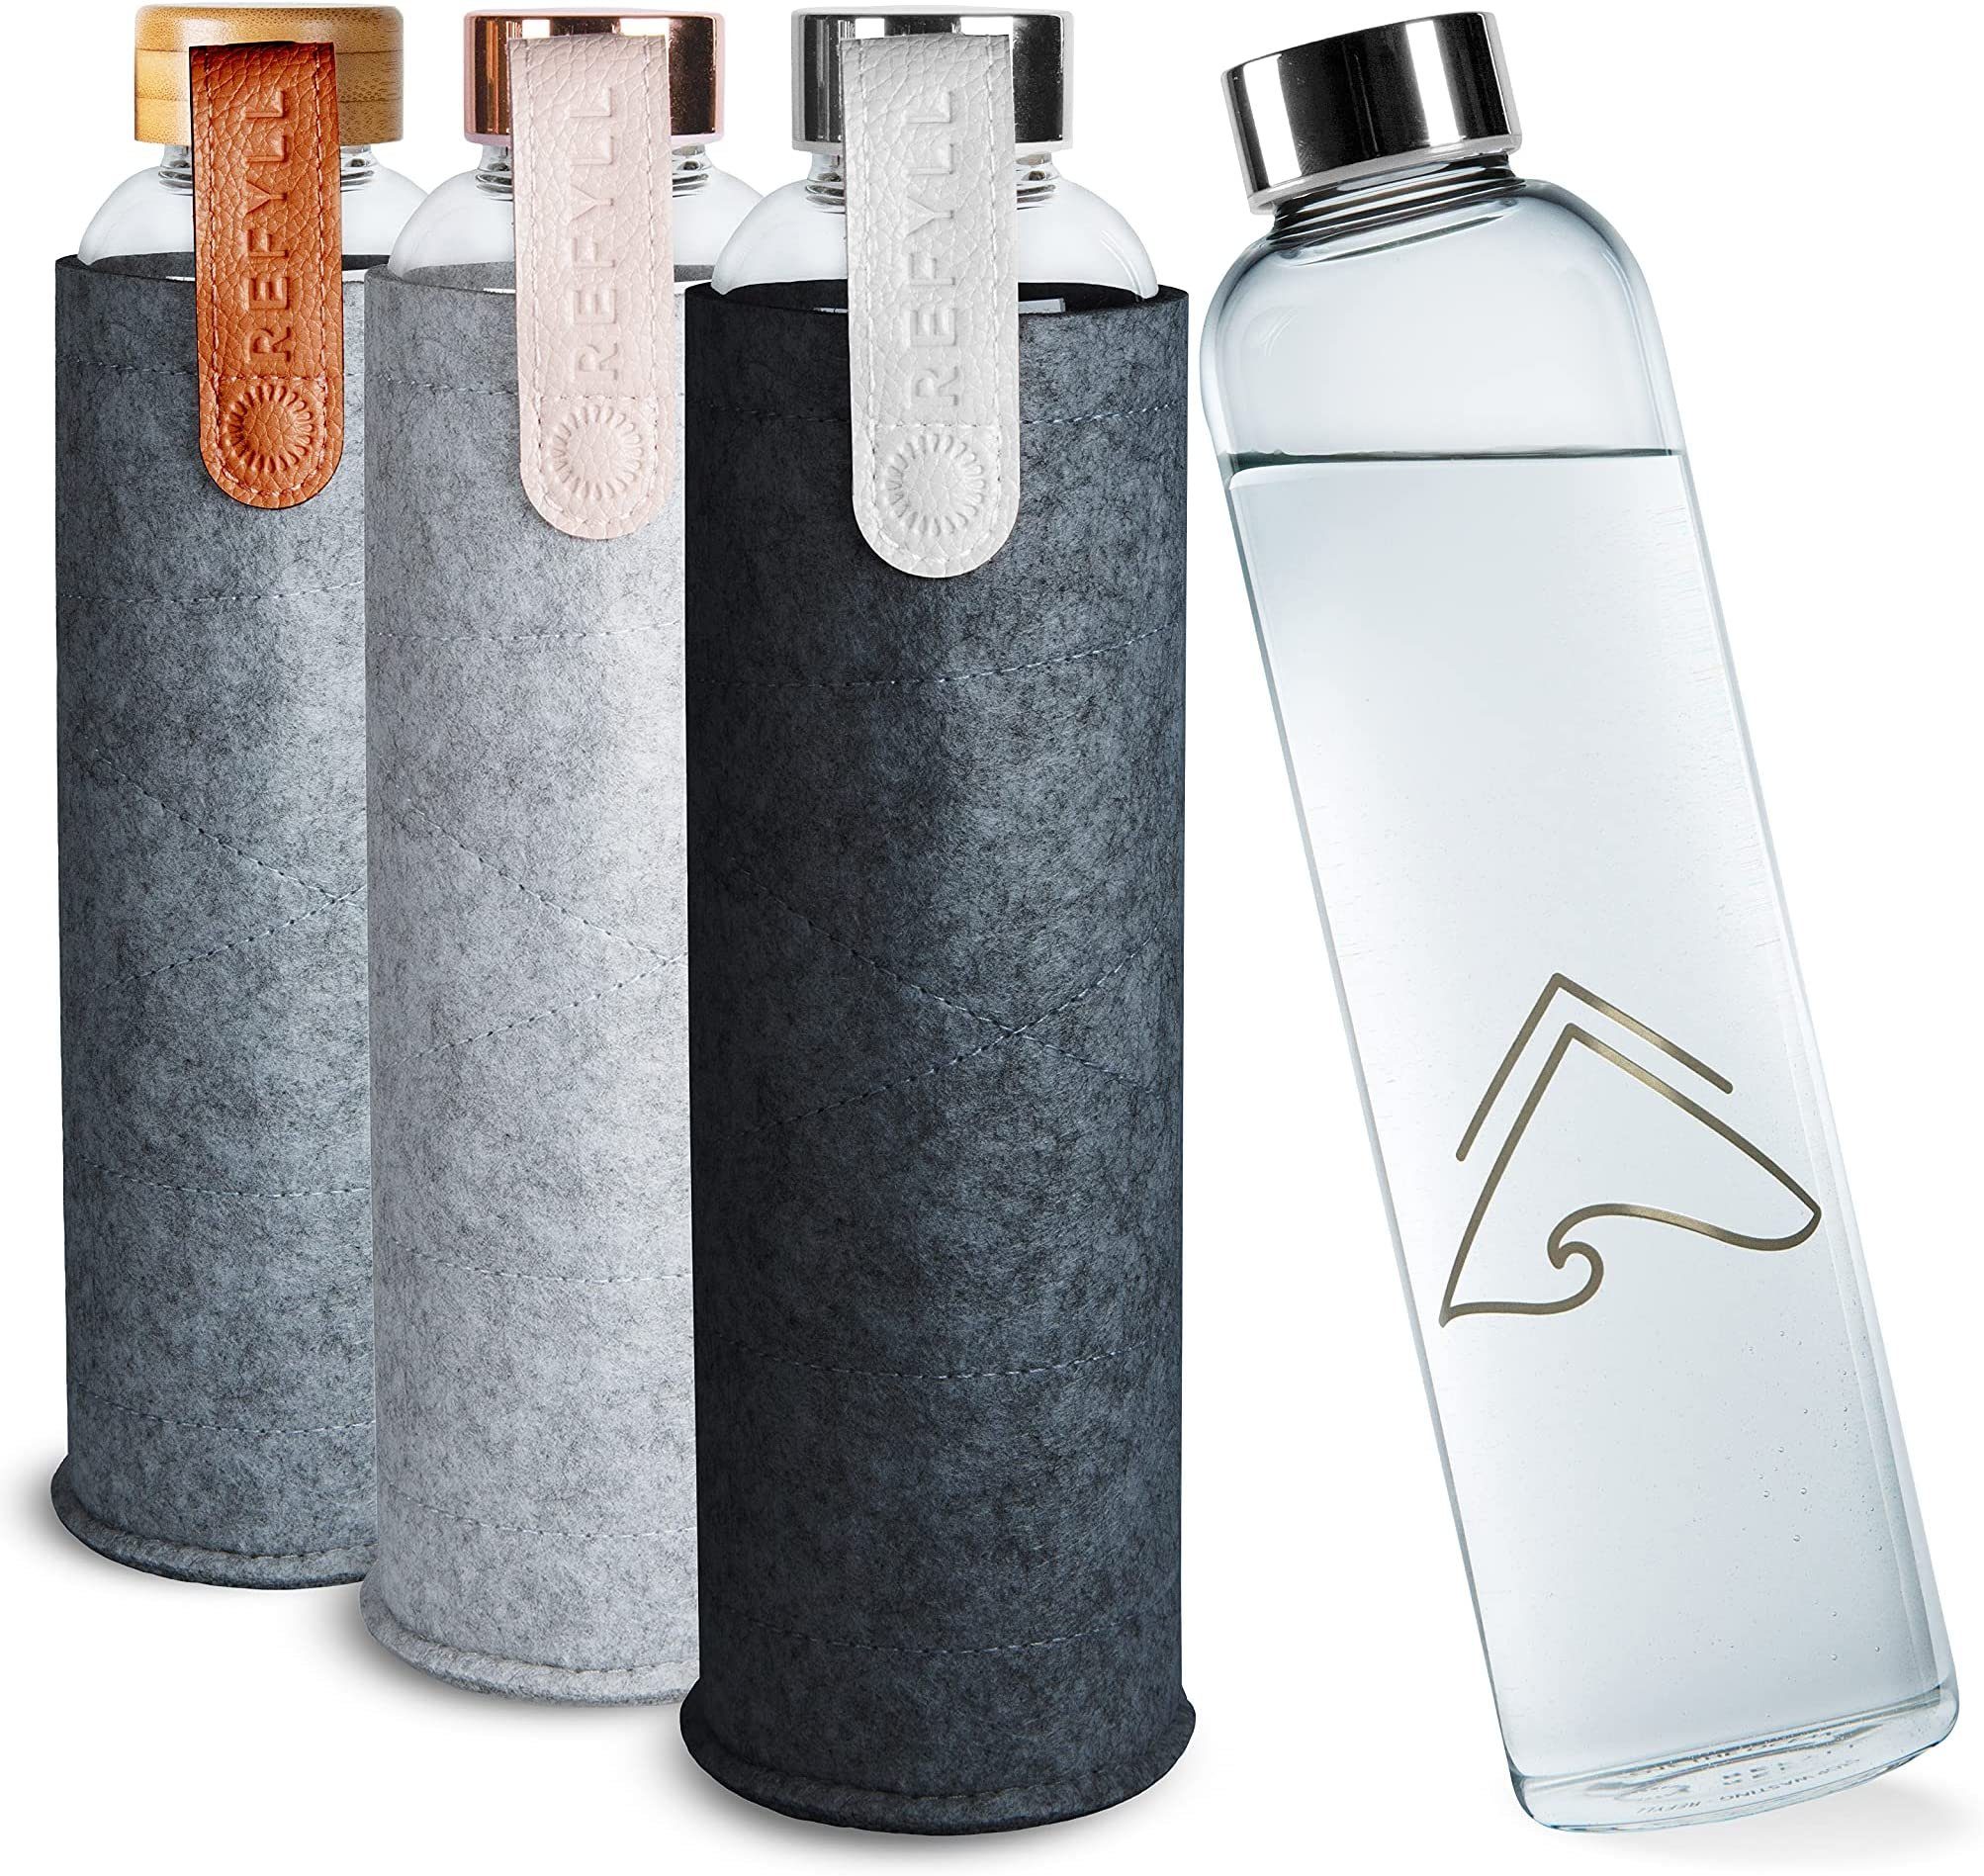 REFYLL Trinkflasche Trinkflasche "pureFyll" 750ml I Glasflasche mit Filzhülle I BPA-frei, mit Schutzhülle I Designer Wasserflasche 0,75L mit Cover